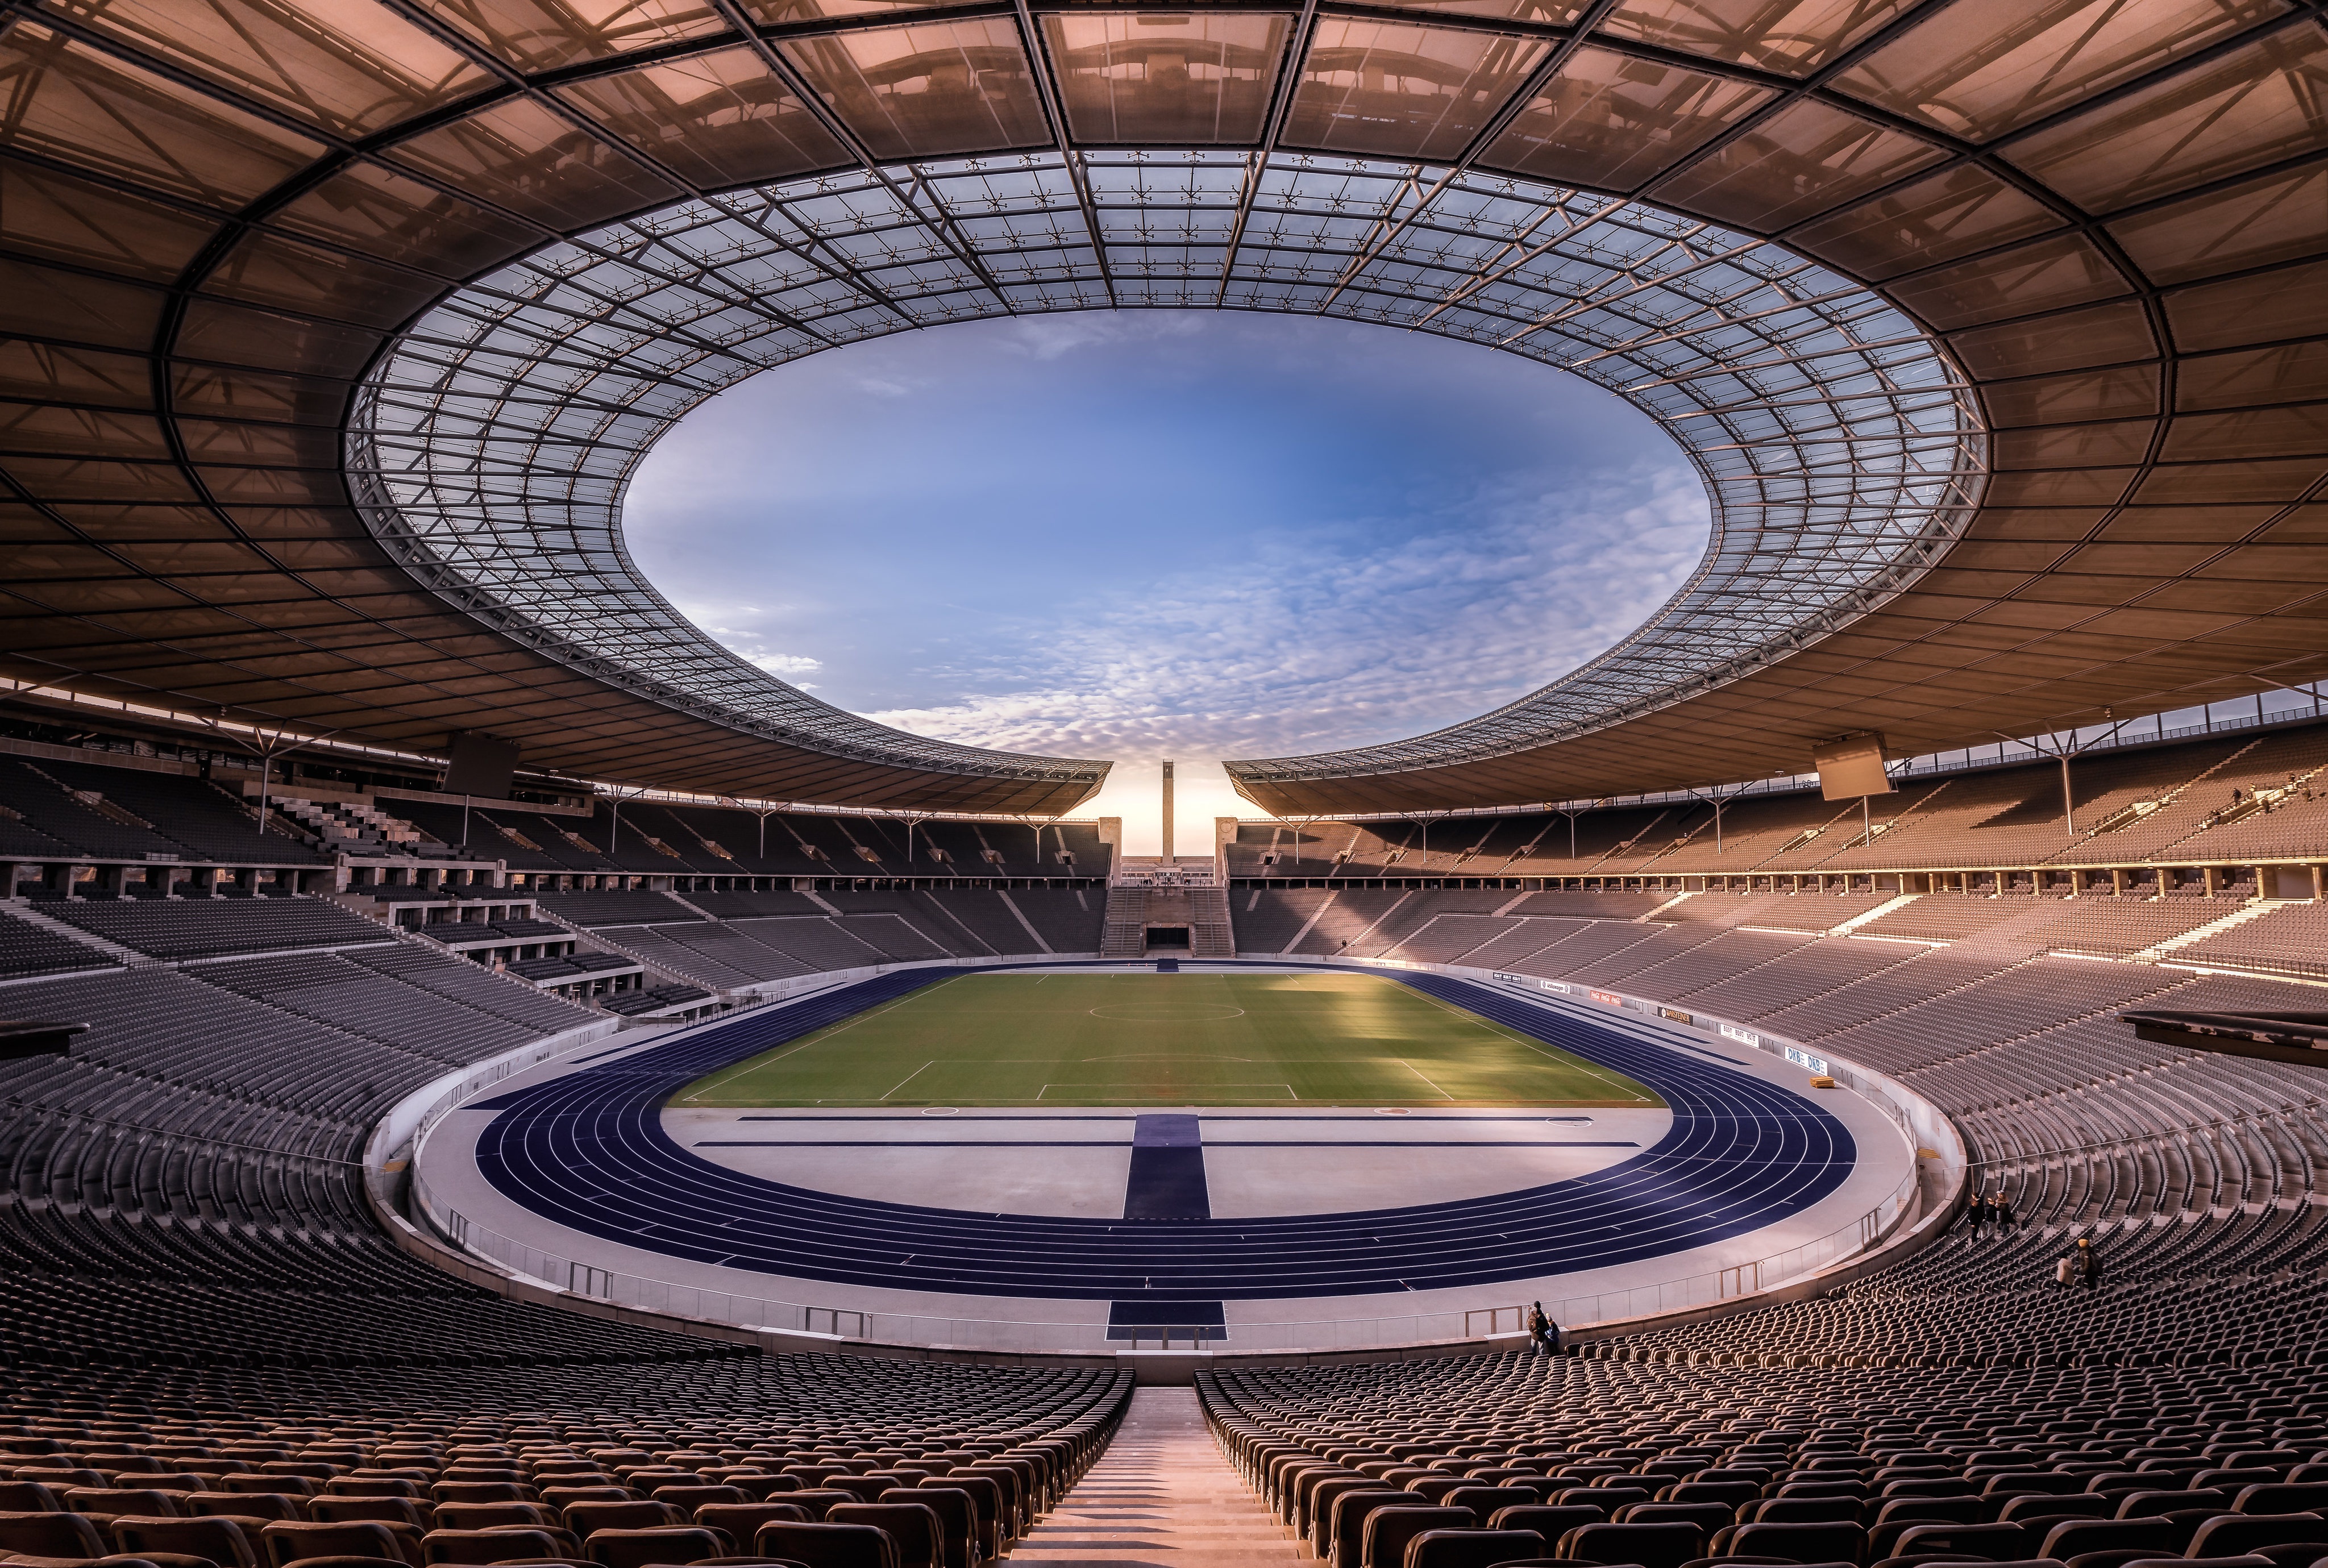 Скачать обои Олимпийский Стадион на телефон бесплатно